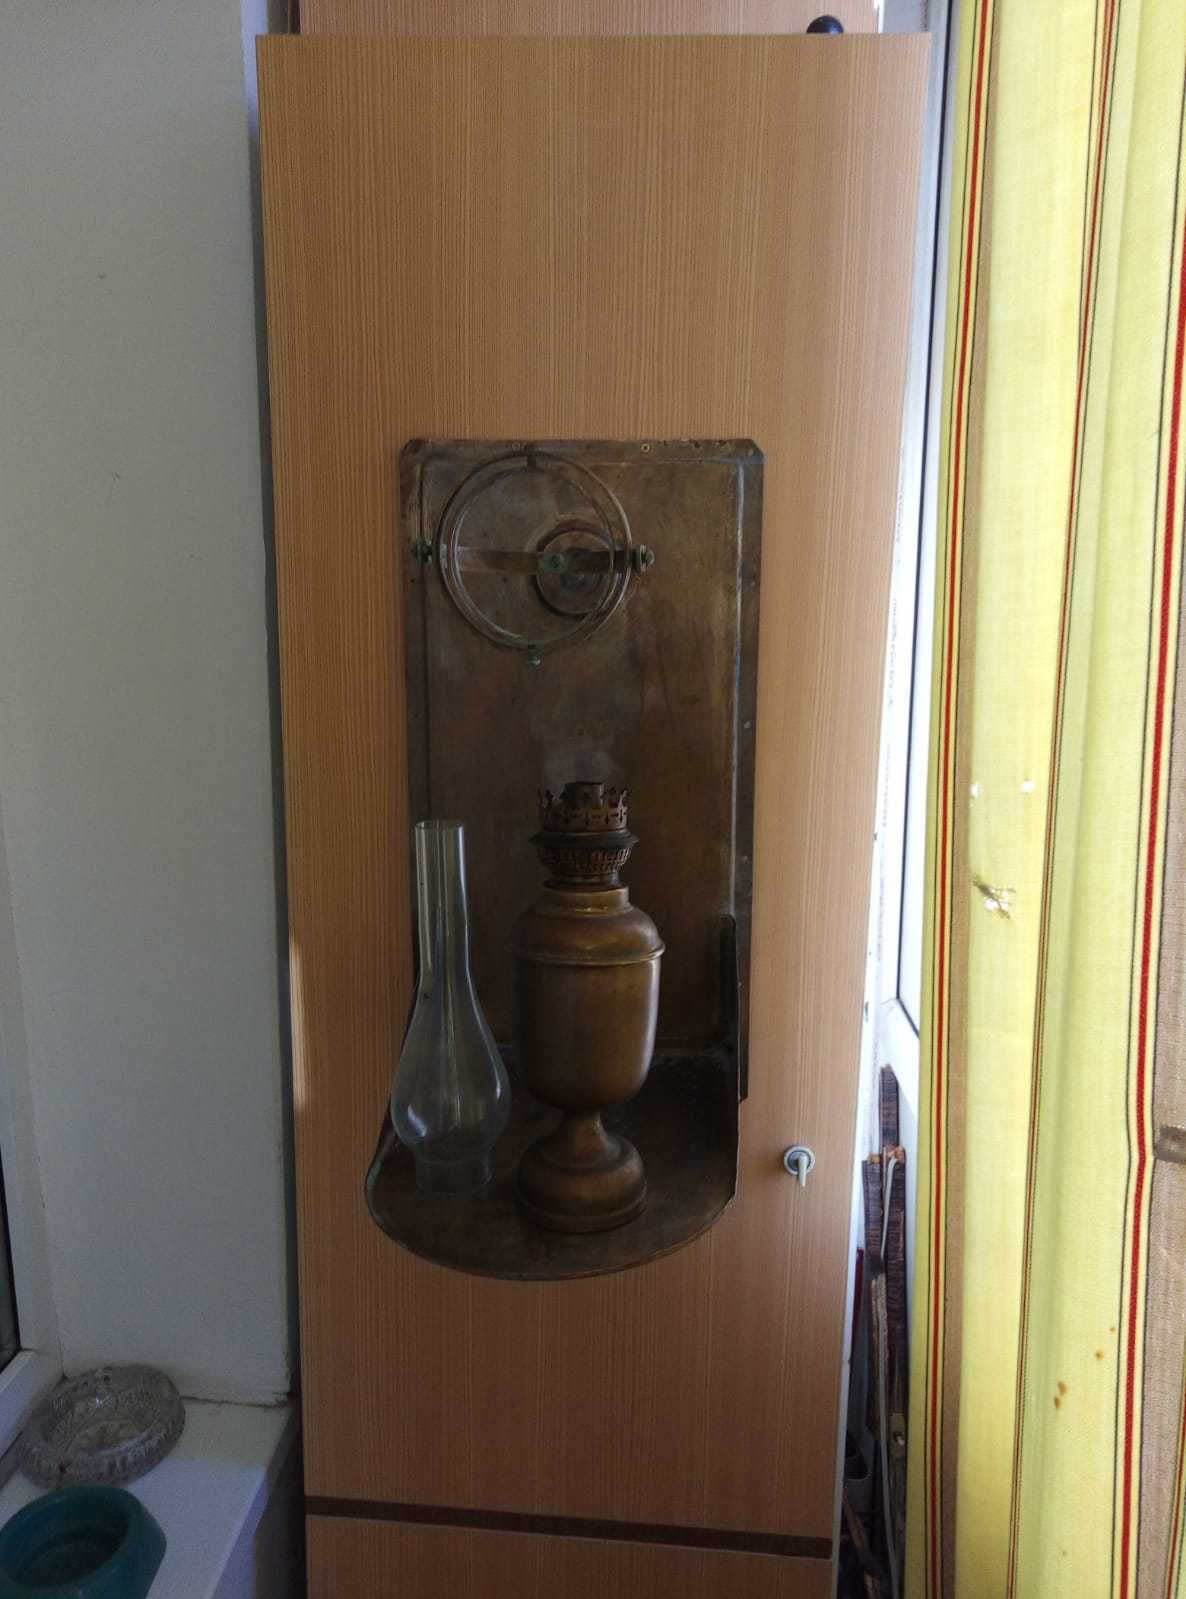 Корабельная керосиновая лампа. 19 век.